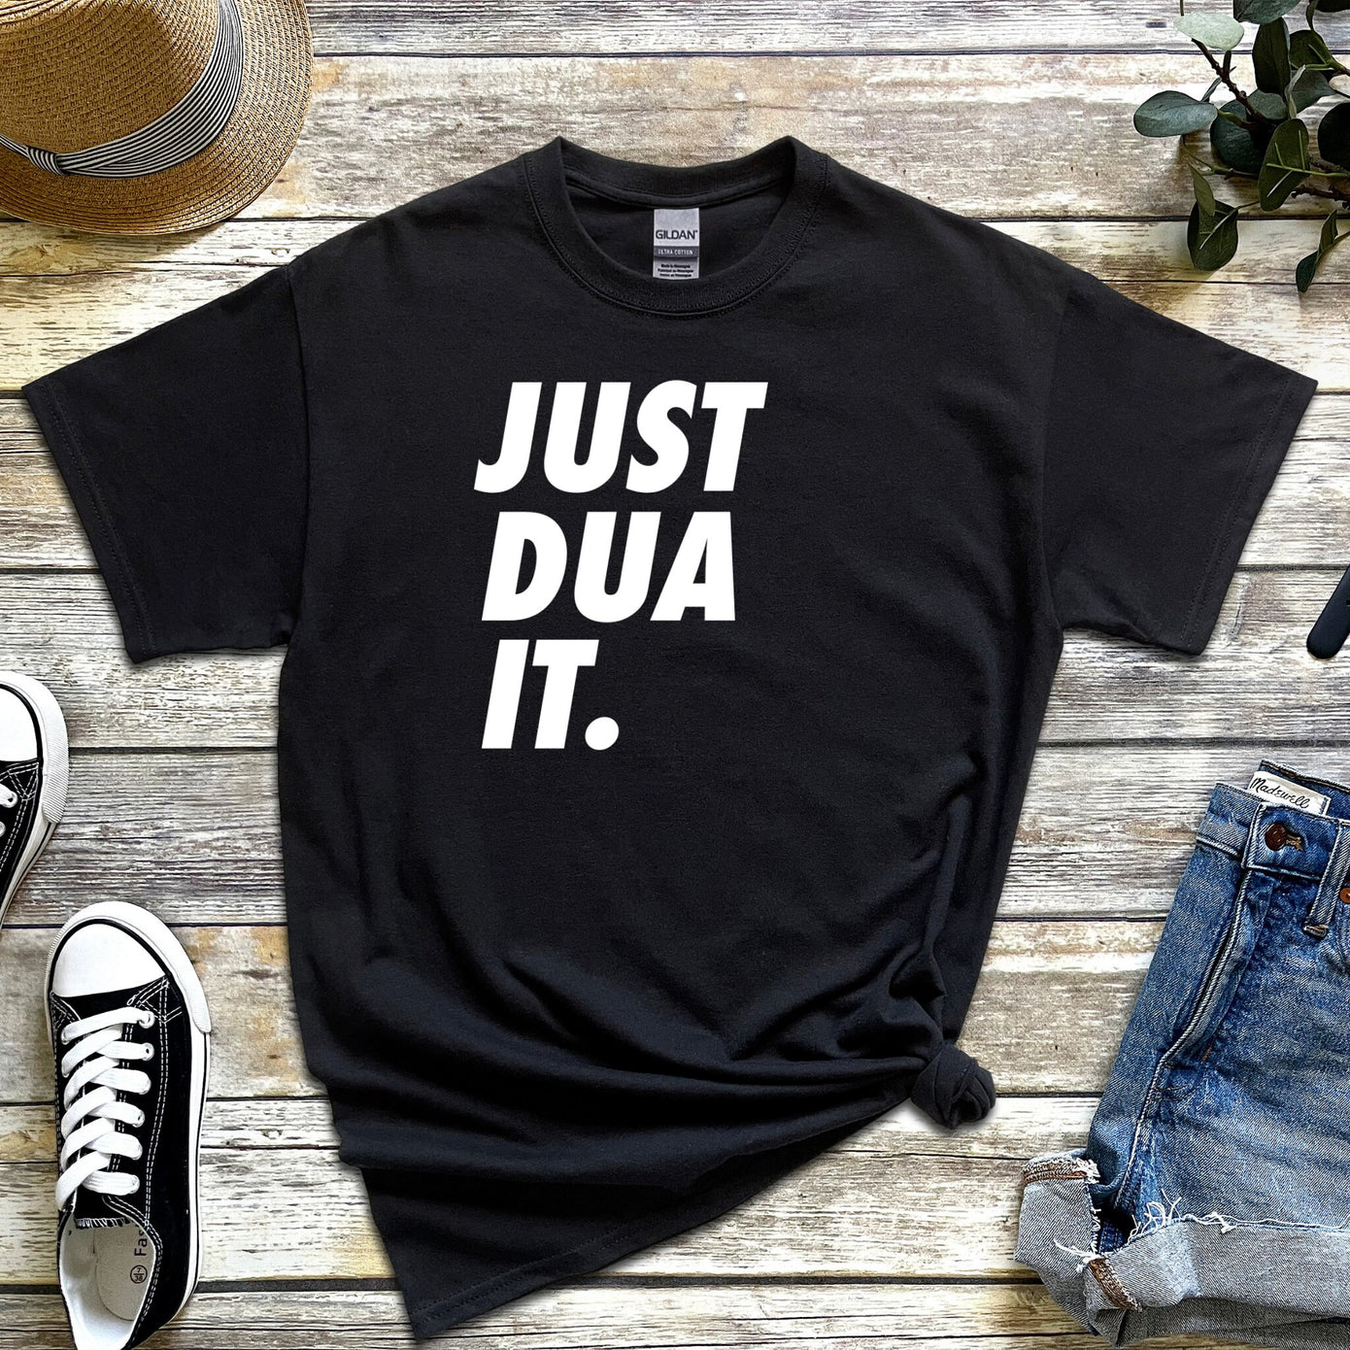 Just Dua It T-Shirt by Humraha